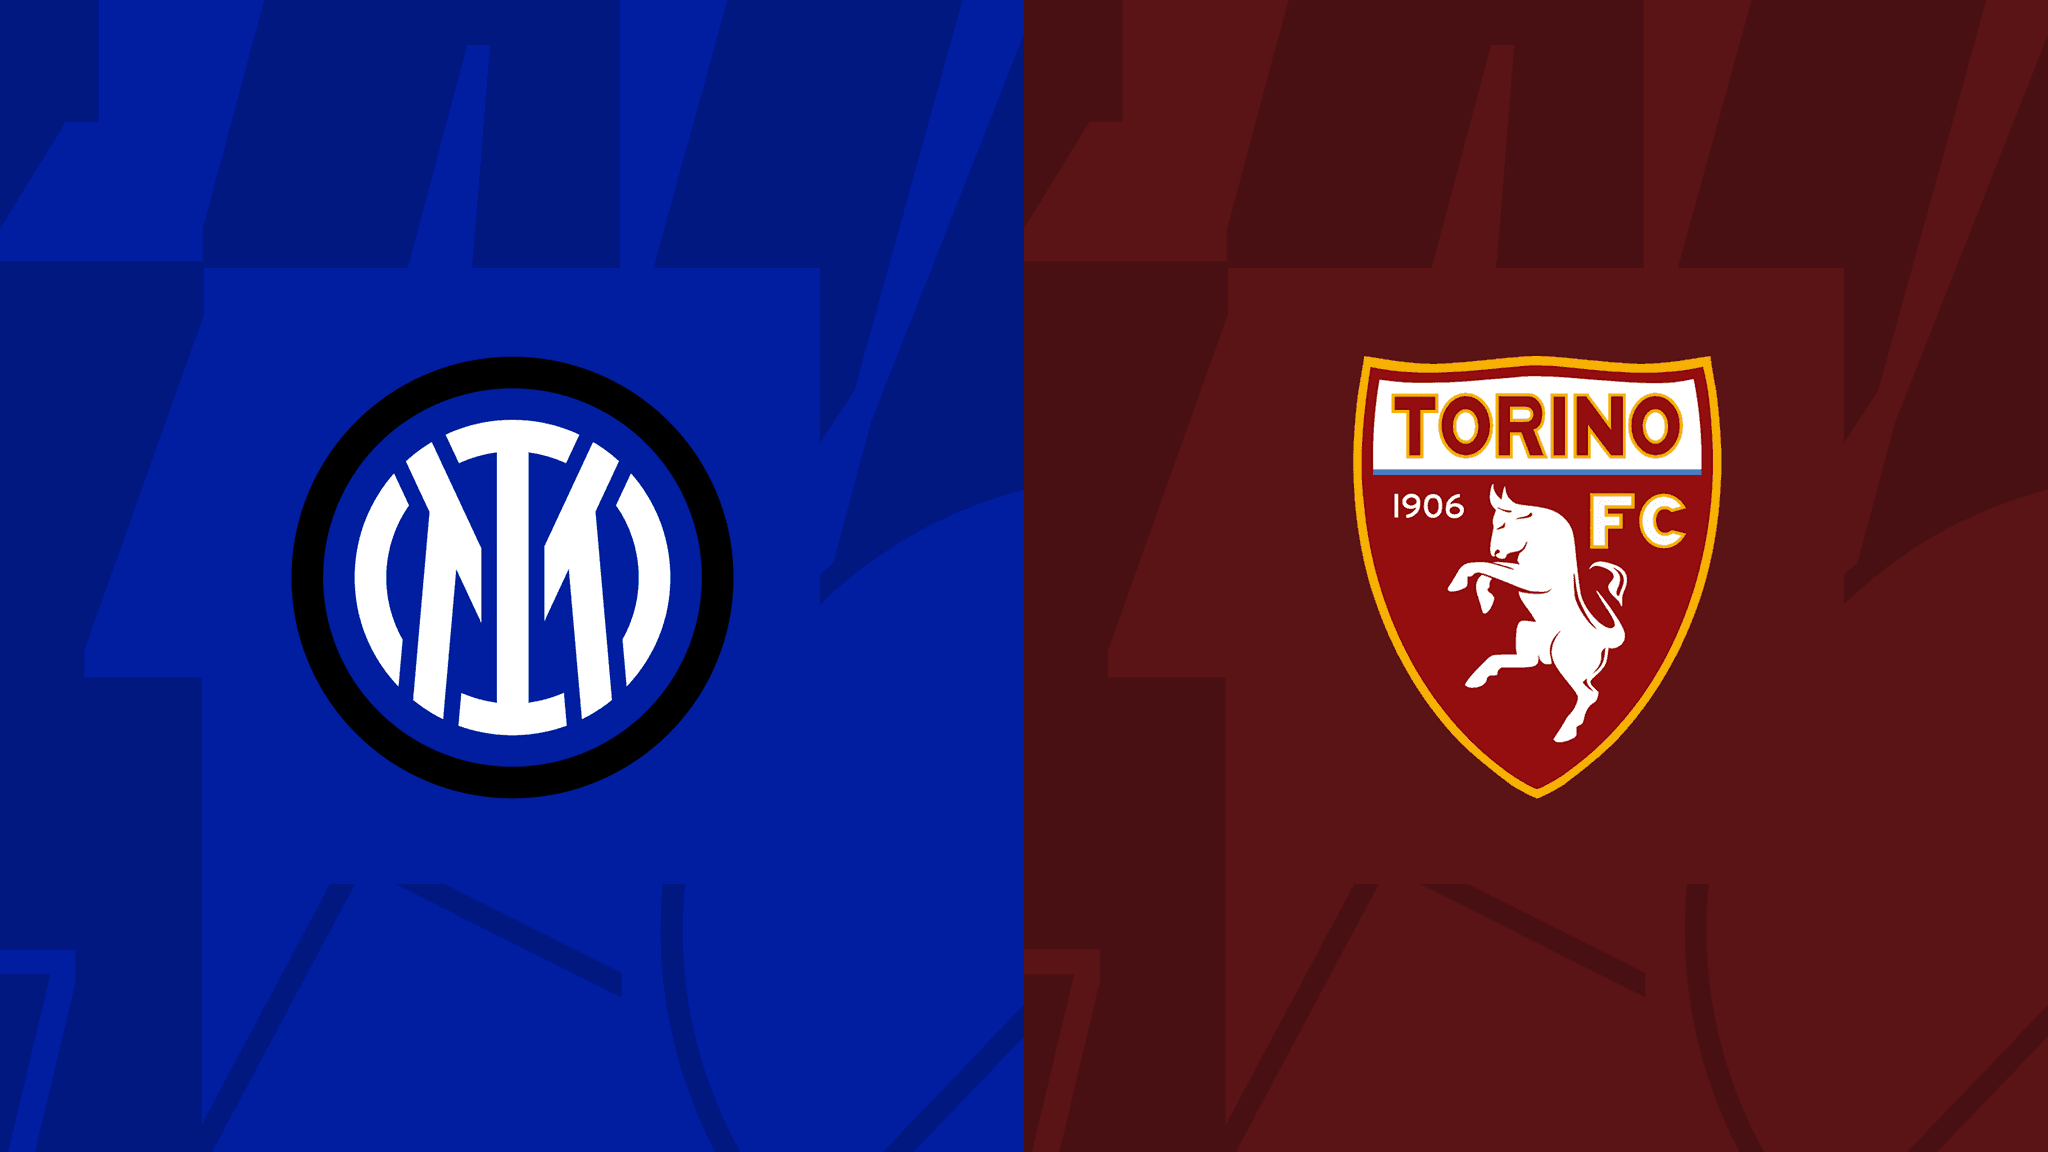 مشاهدة مباراة انتر ميلان و تورينو بث مباشر 10-09-2022 Internazionale vs Torino